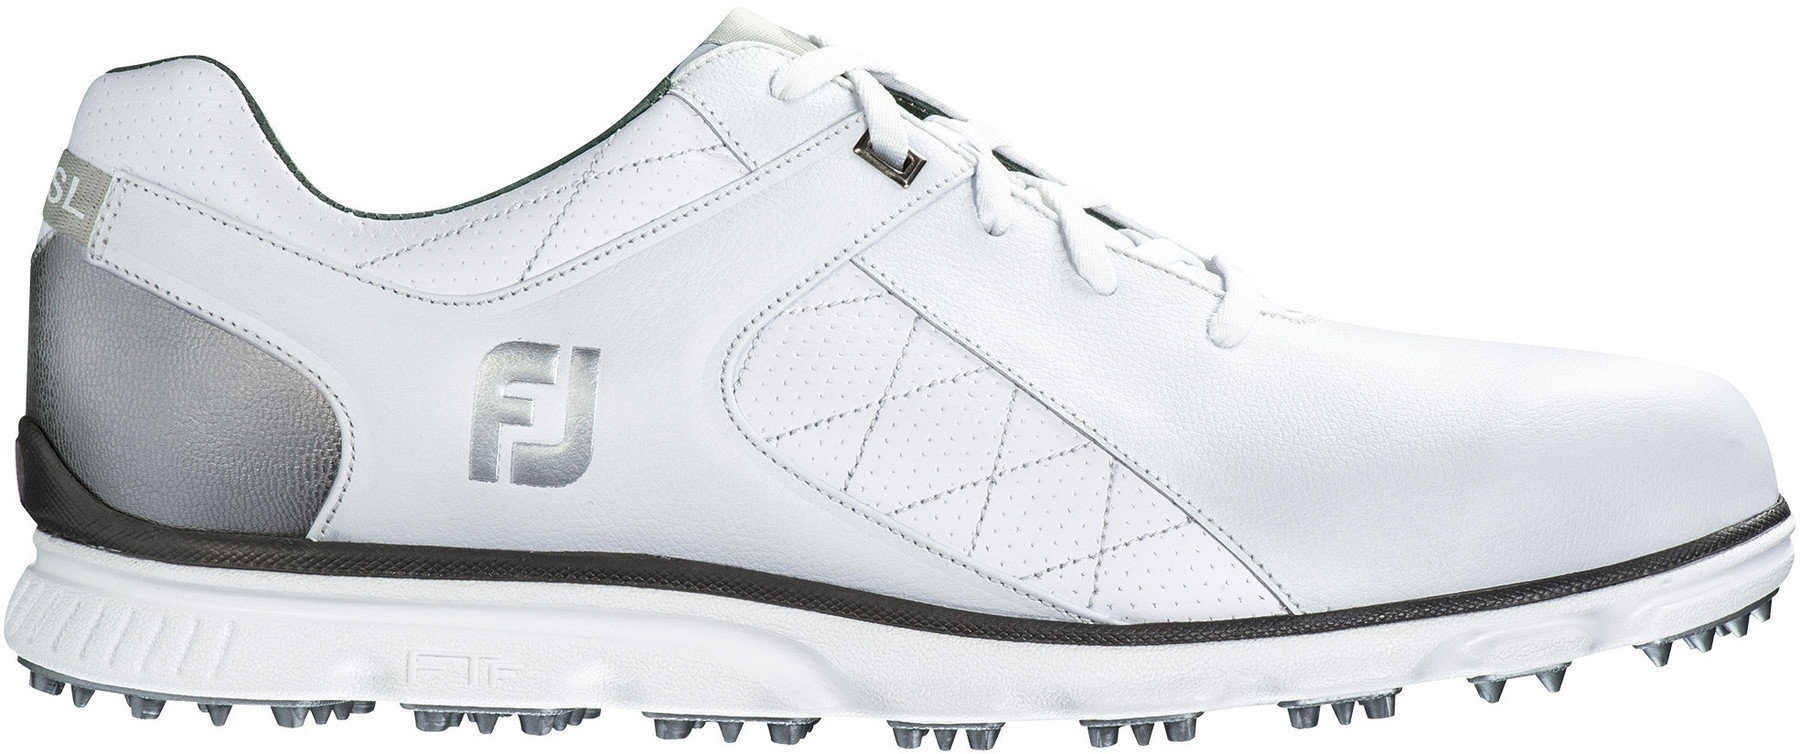 Men's golf shoes Footjoy Pro SL Mens Golf Shoes White/Silver US 9